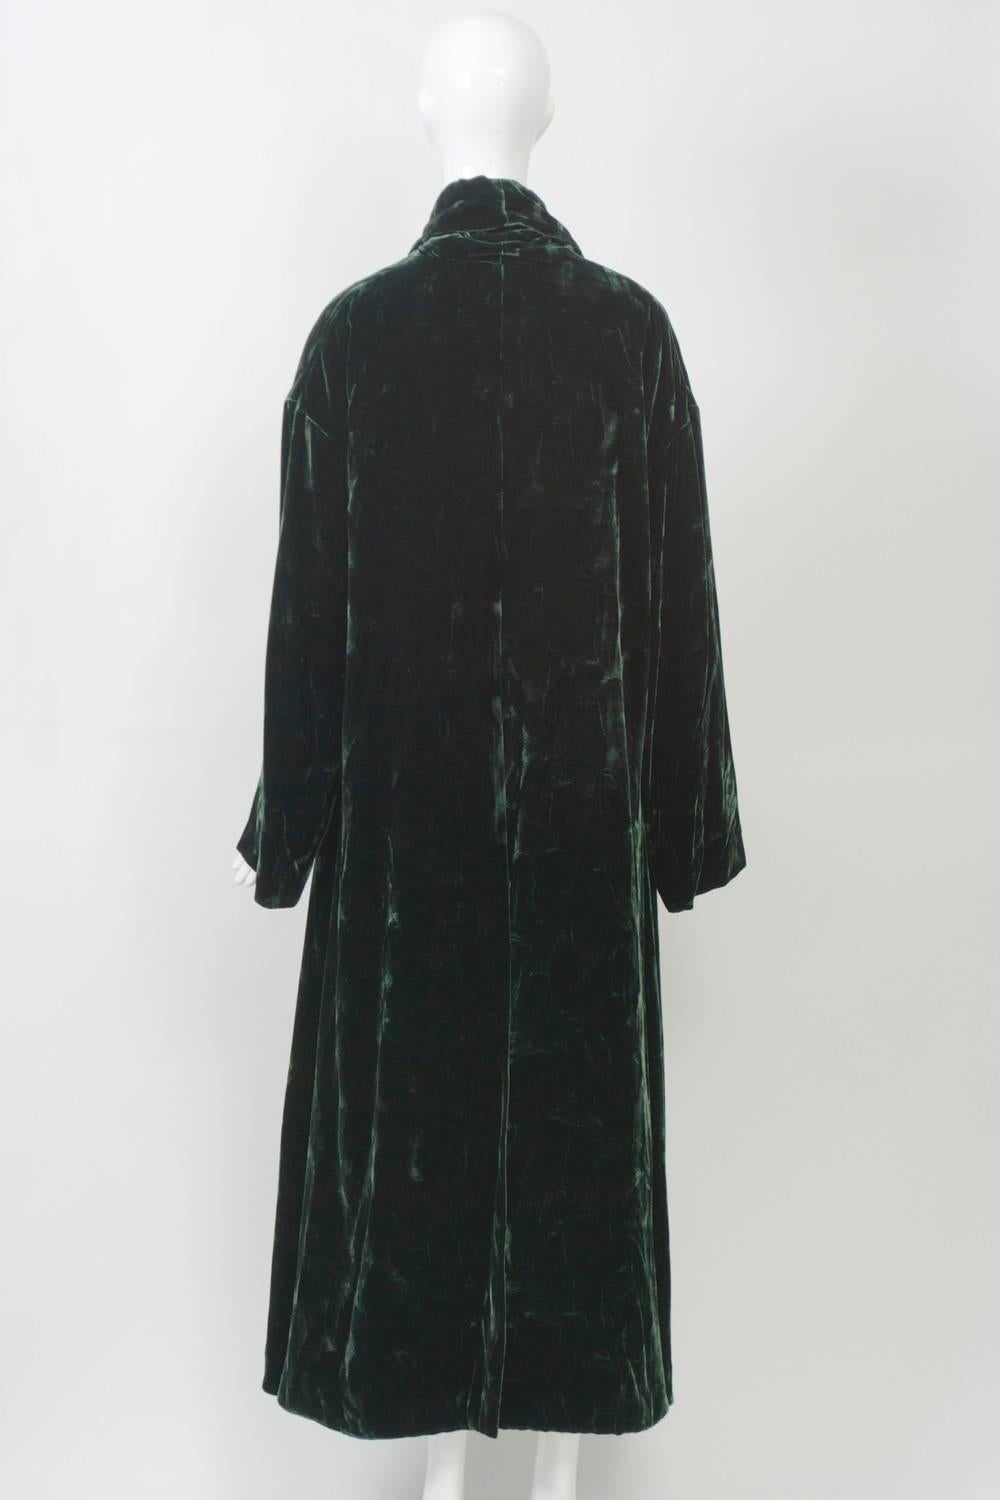 Black Romeo Gigli Green Velvet Coat